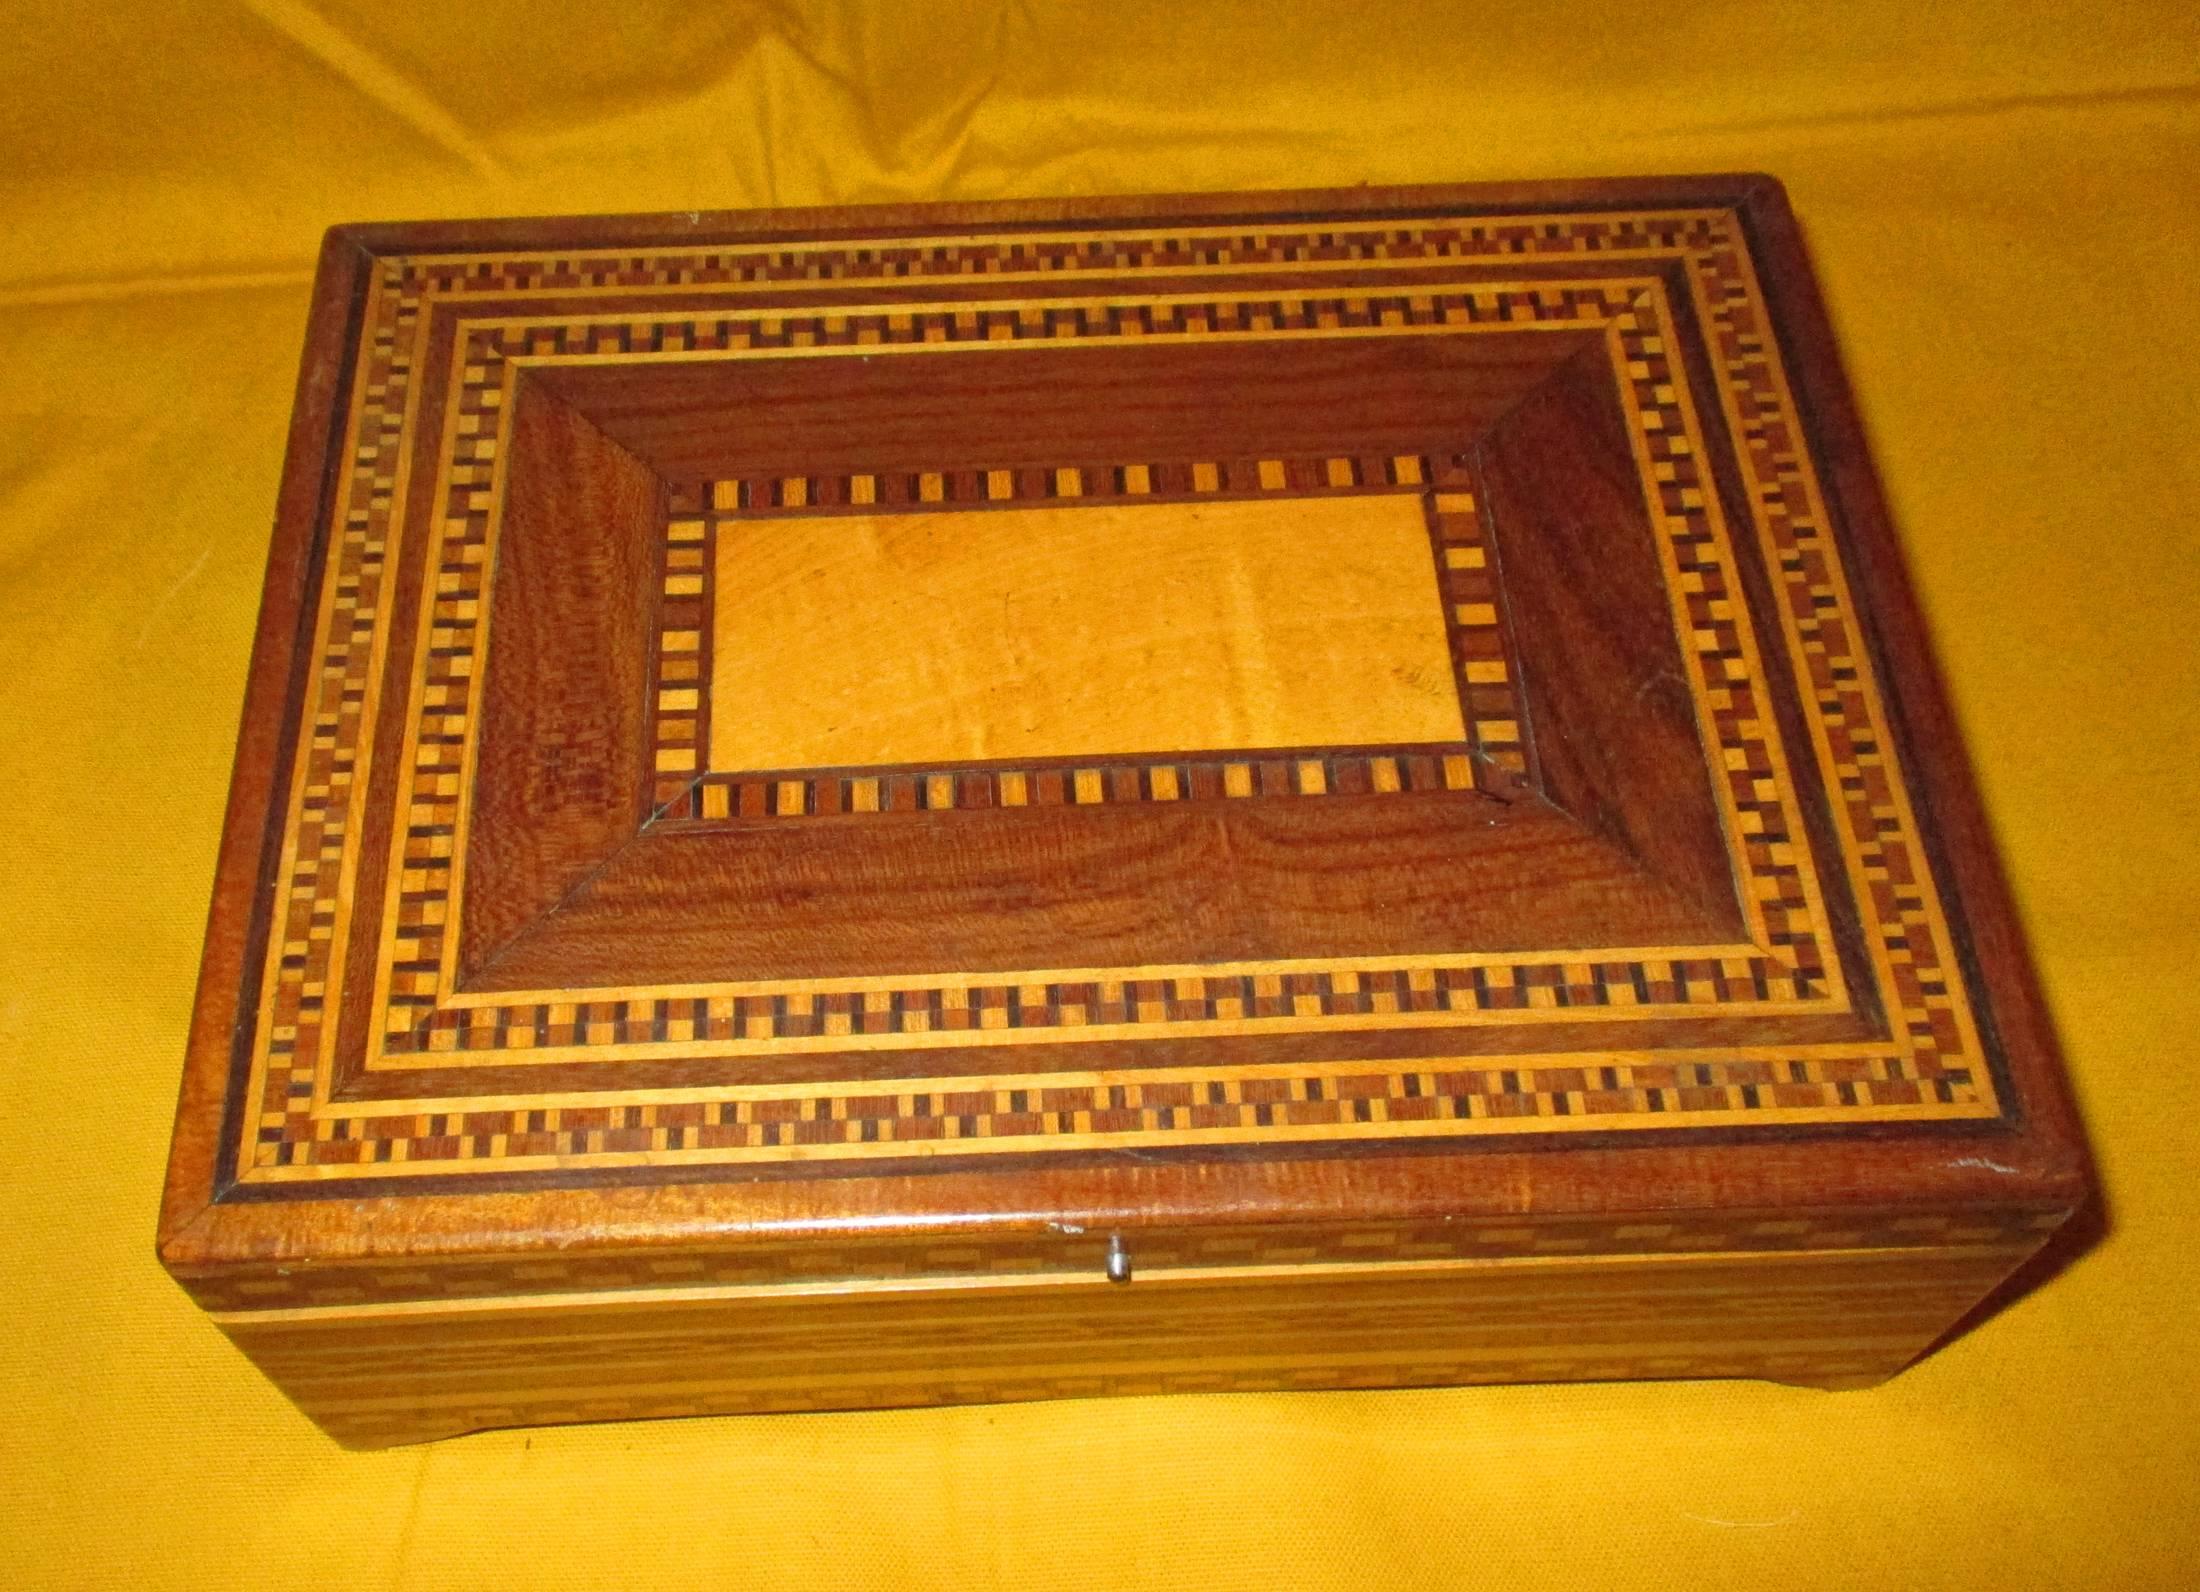 Inlay Santa Maria Del Rio Rebozo Case, Inlaid Wooden Box for Storing Rebozos